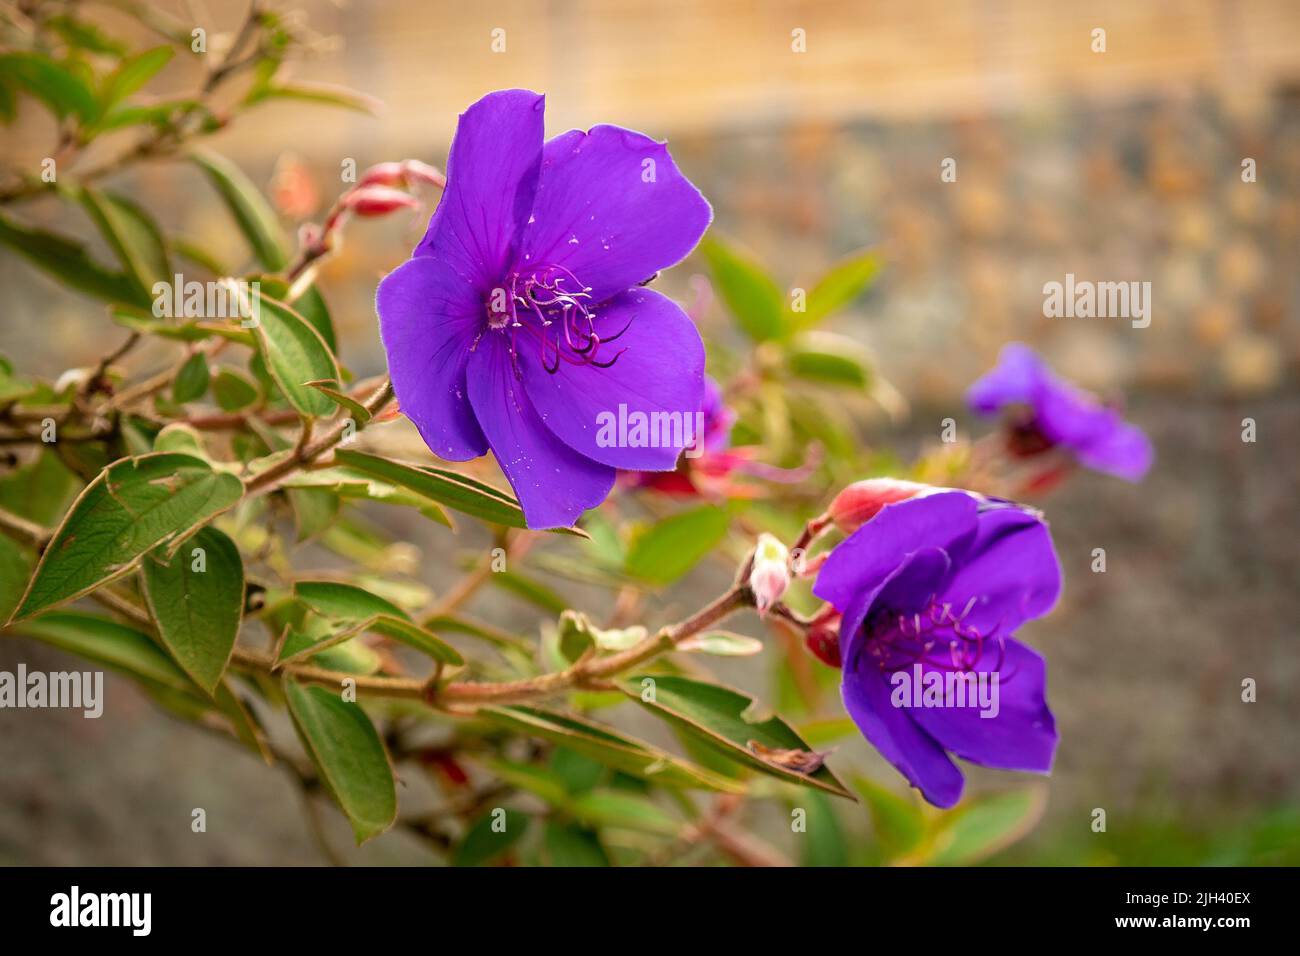 The Brazilian Purple Flower Known as Pleroma urvilleanum (Tibouchina urvilleana) in the Garden Stock Photo